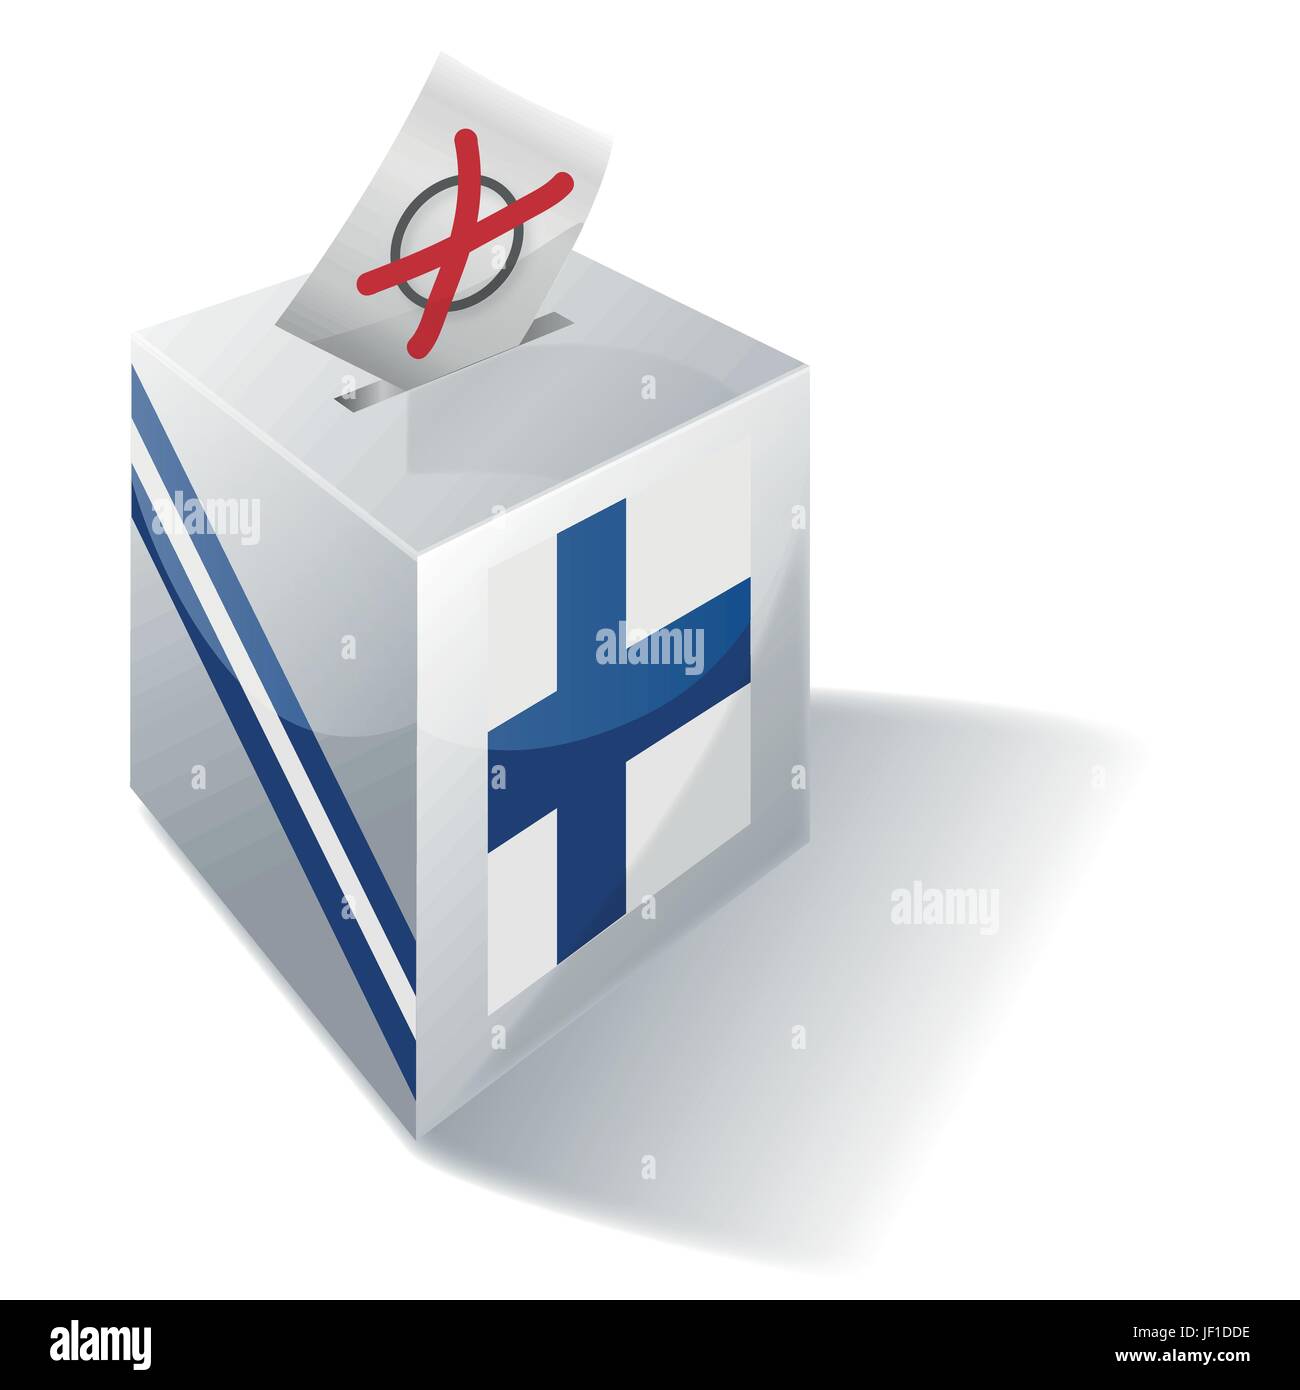 La Finlande, Helsinki, Finlande, république, social, croix, urnes, drapeau, vote, vote, Illustration de Vecteur